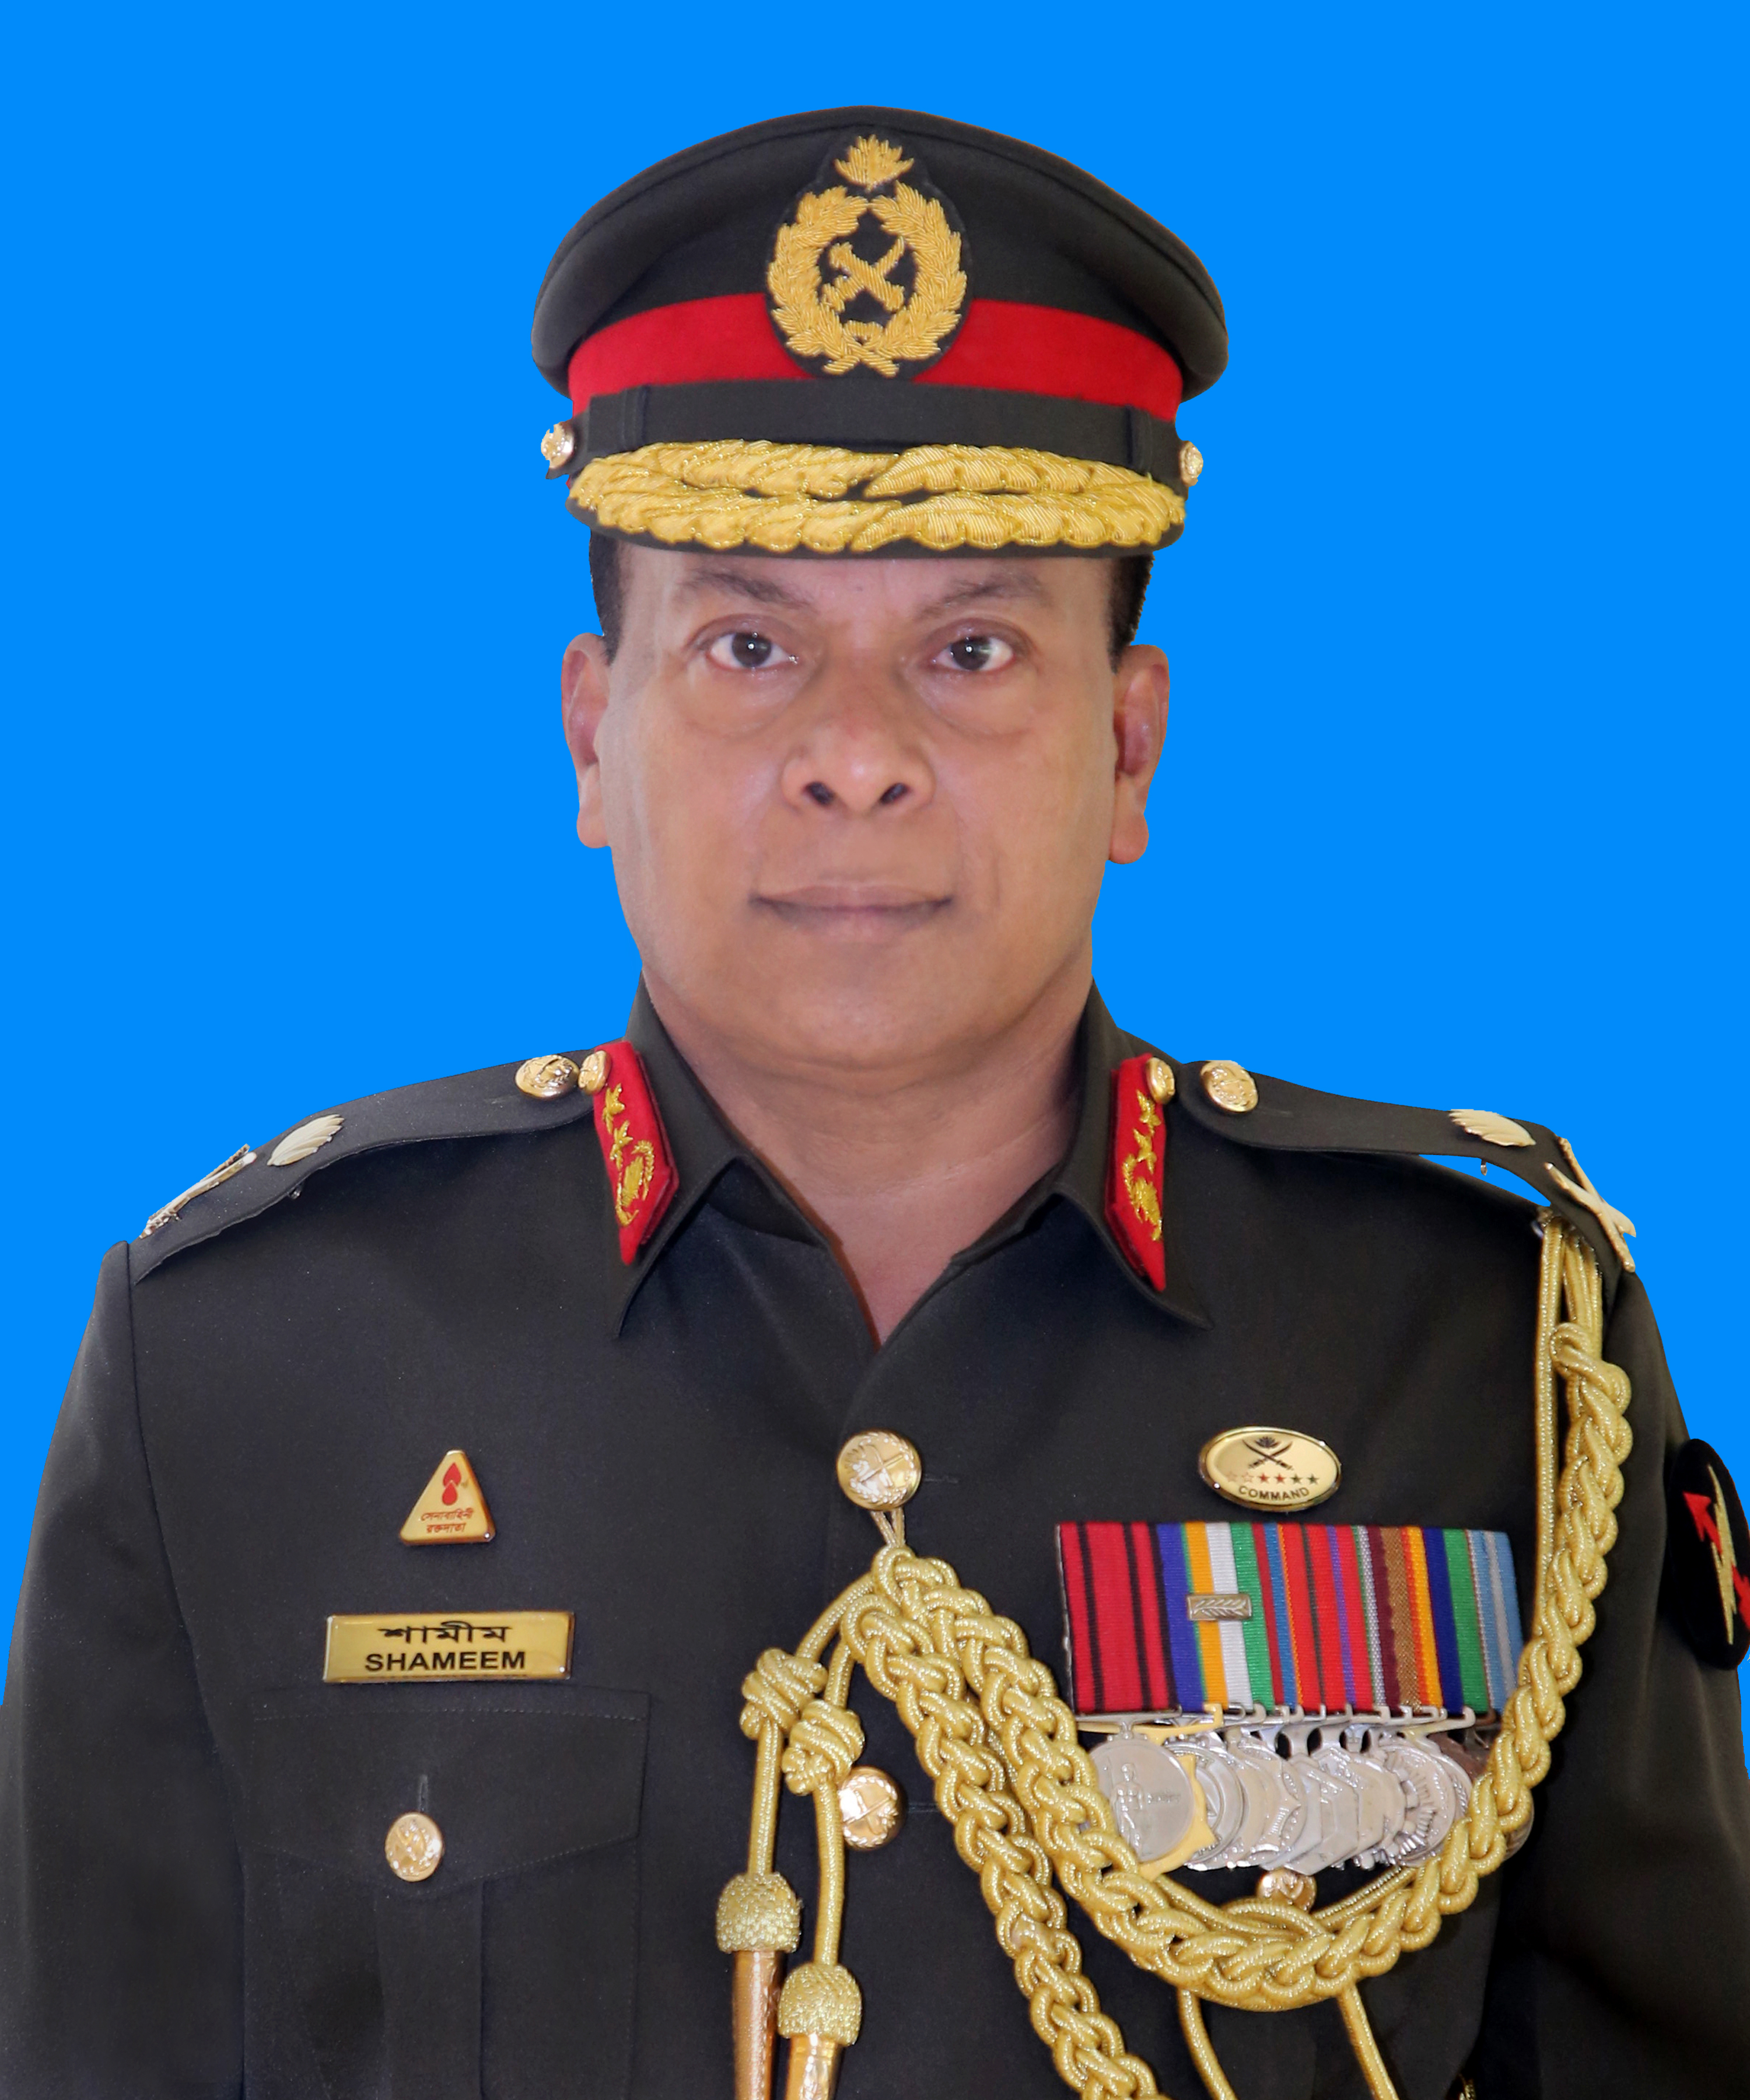 Maj Gen Mizanur Rahman Shameem